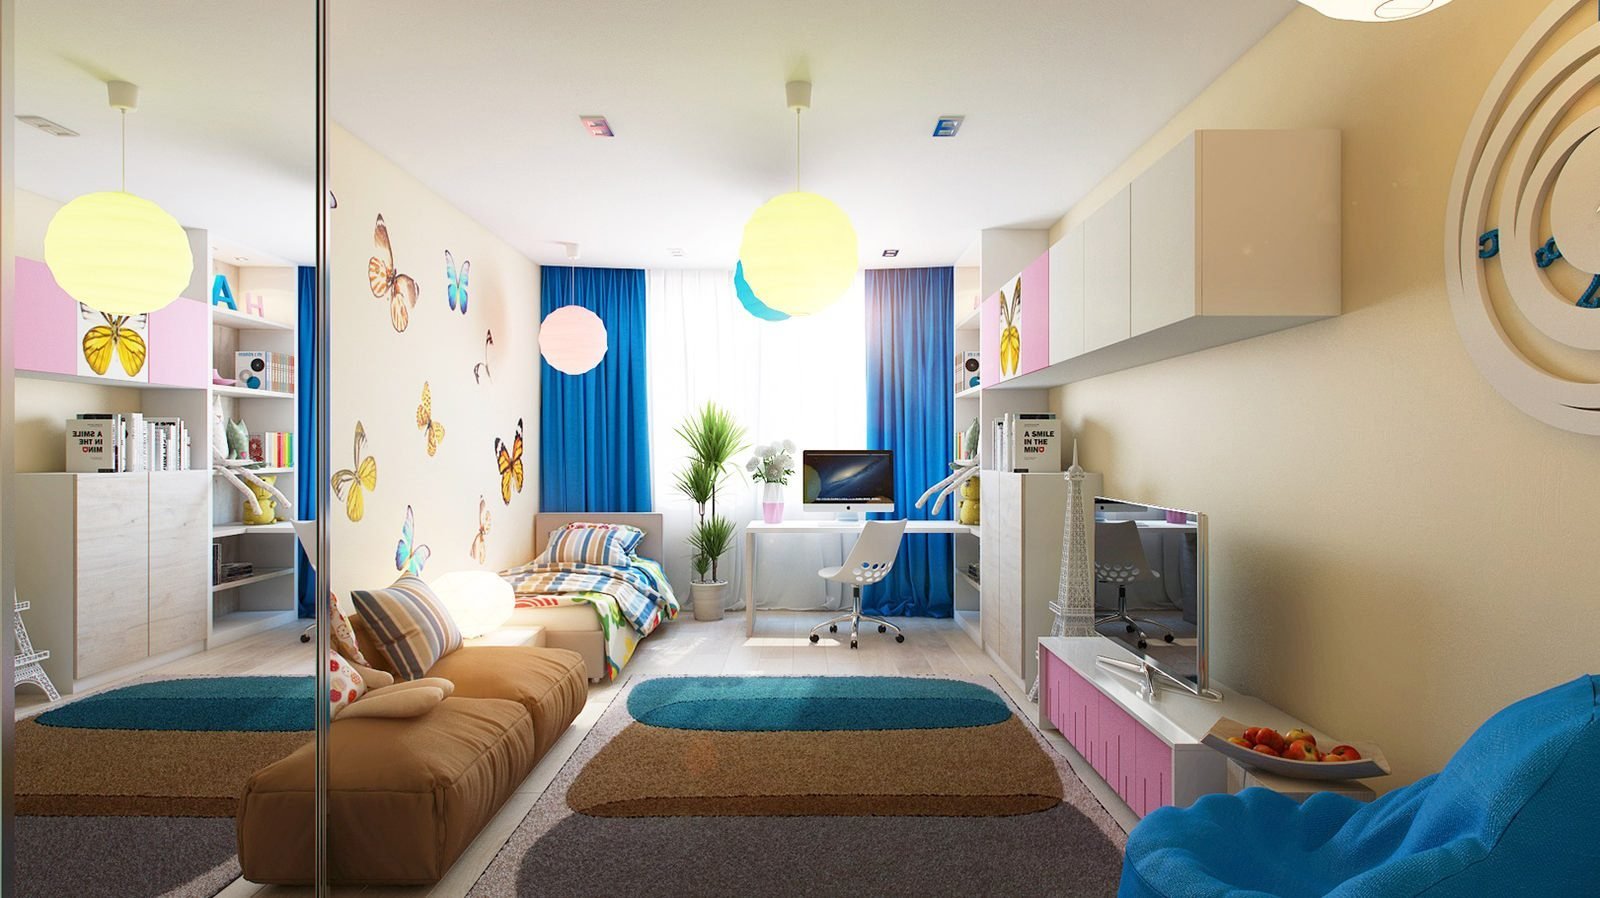 Узкая и длинная детская комната дизайн - 69 фото